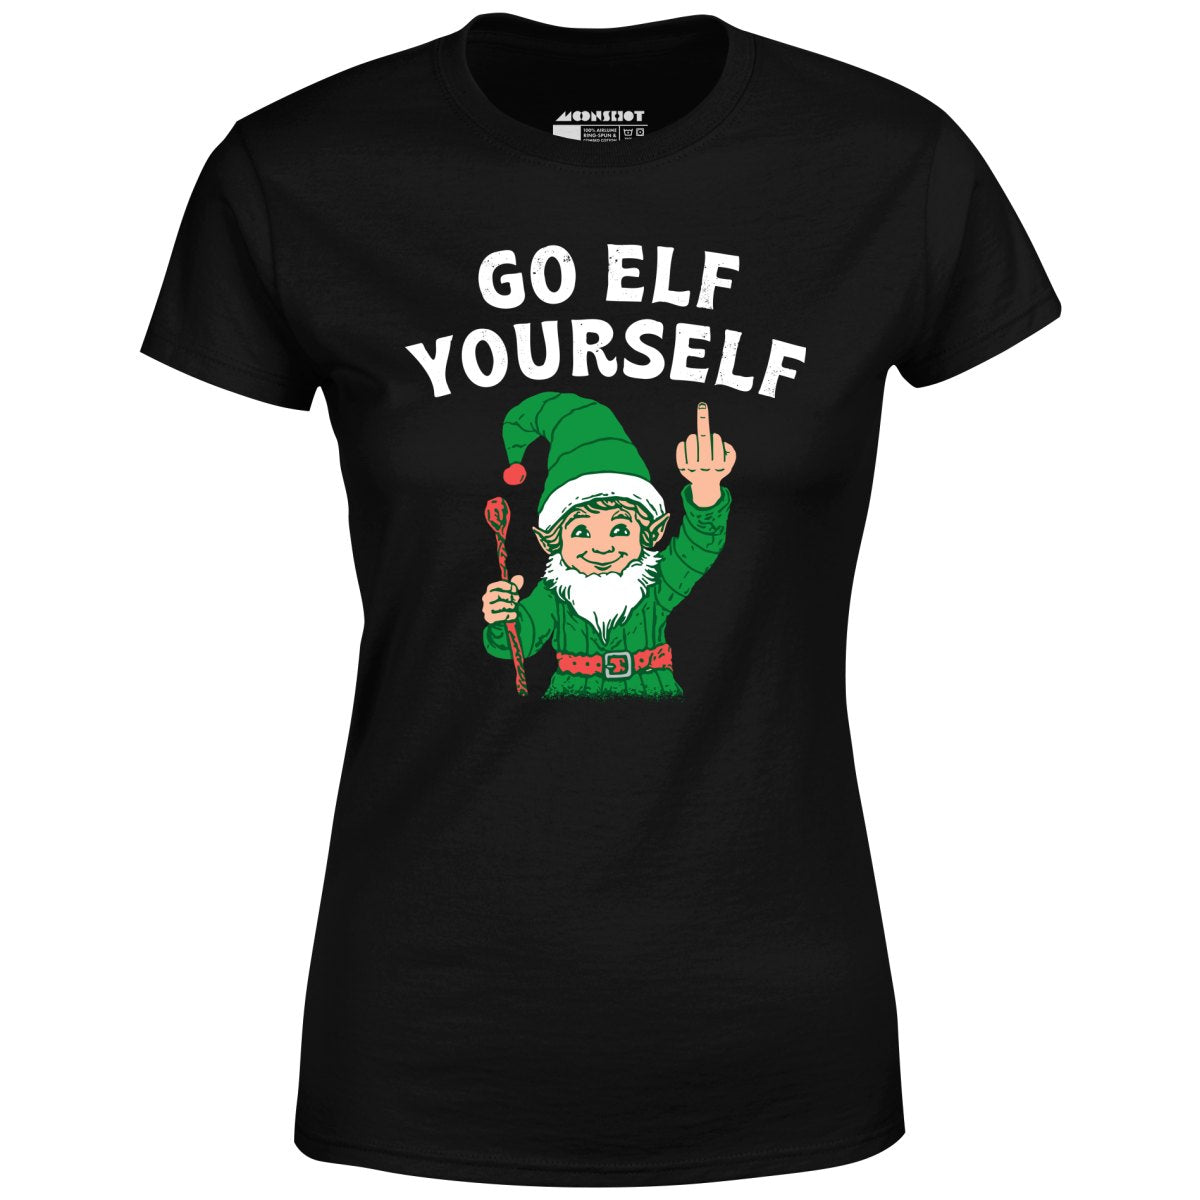 Go Elf Yourself - Women's T-Shirt